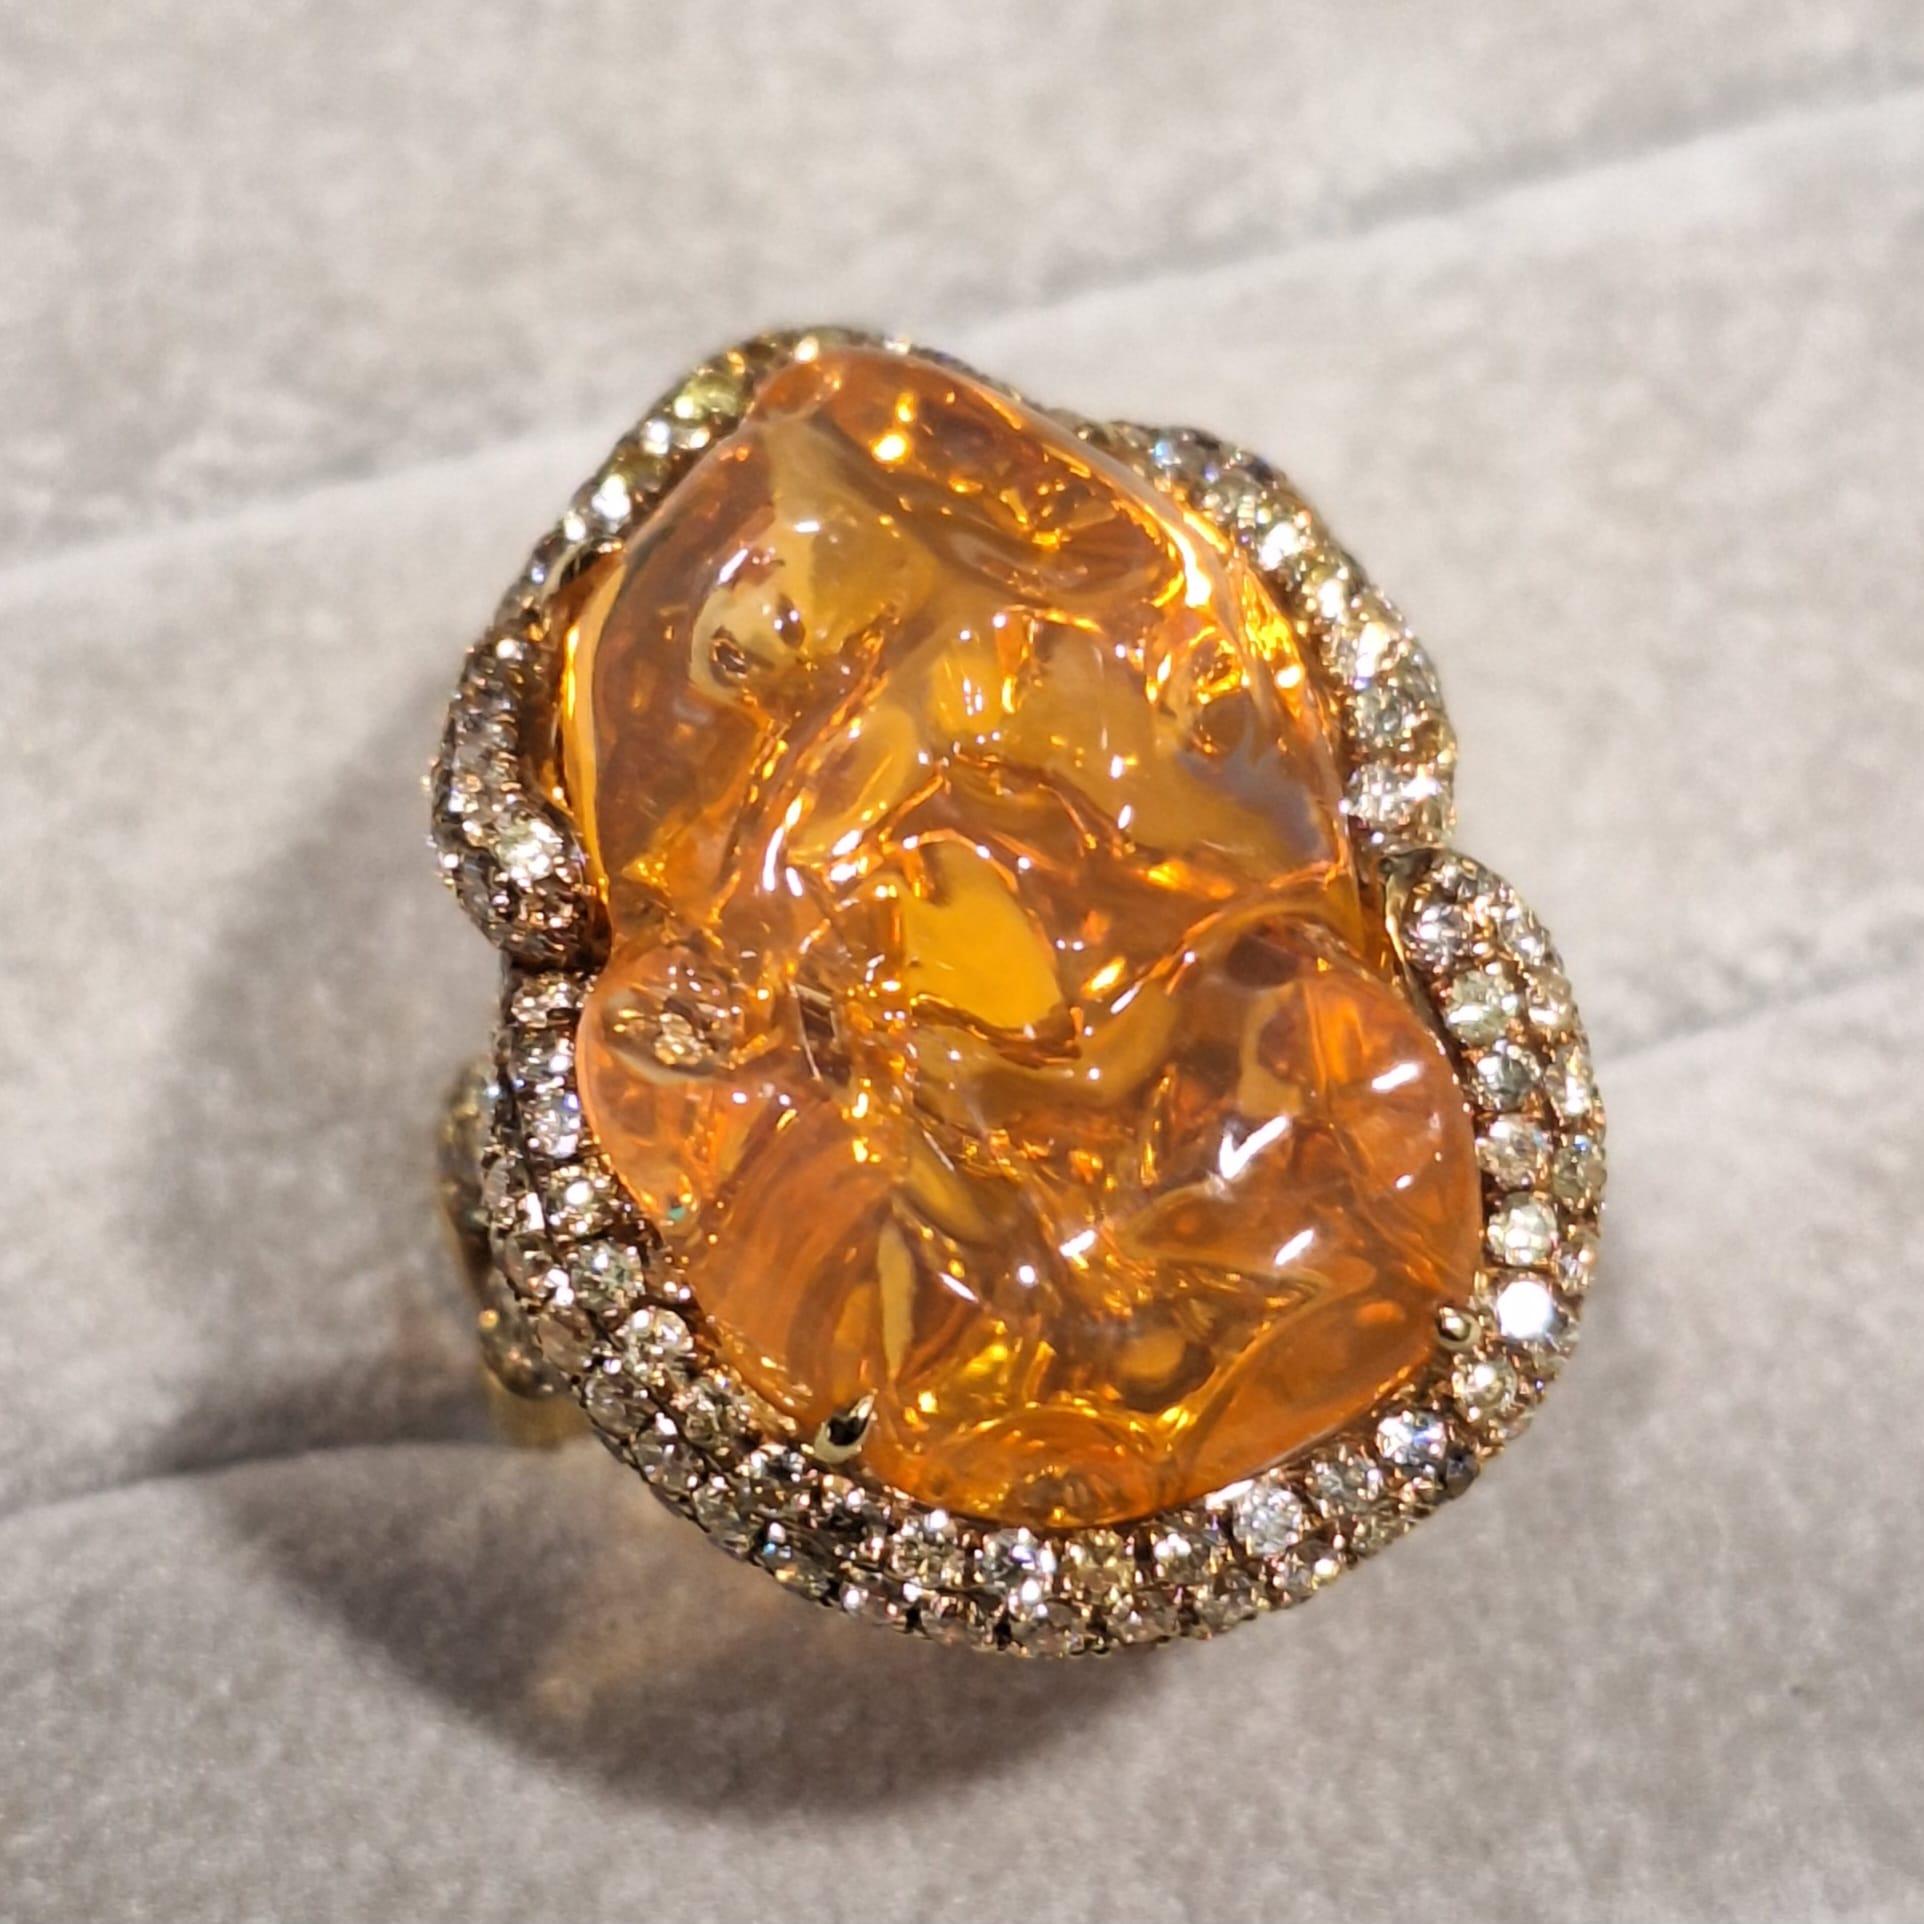 18 Karat Gelbgold Diamantring mit Opal

Opal ist darauf ausgerichtet, Harmonie und Ausgeglichenheit herzustellen.

Diamanten symbolisieren Klarheit und Reinheit, stehen aber auch für Unschuld, Stärke und wahre Liebe.

Die Ringfassung mit Opal